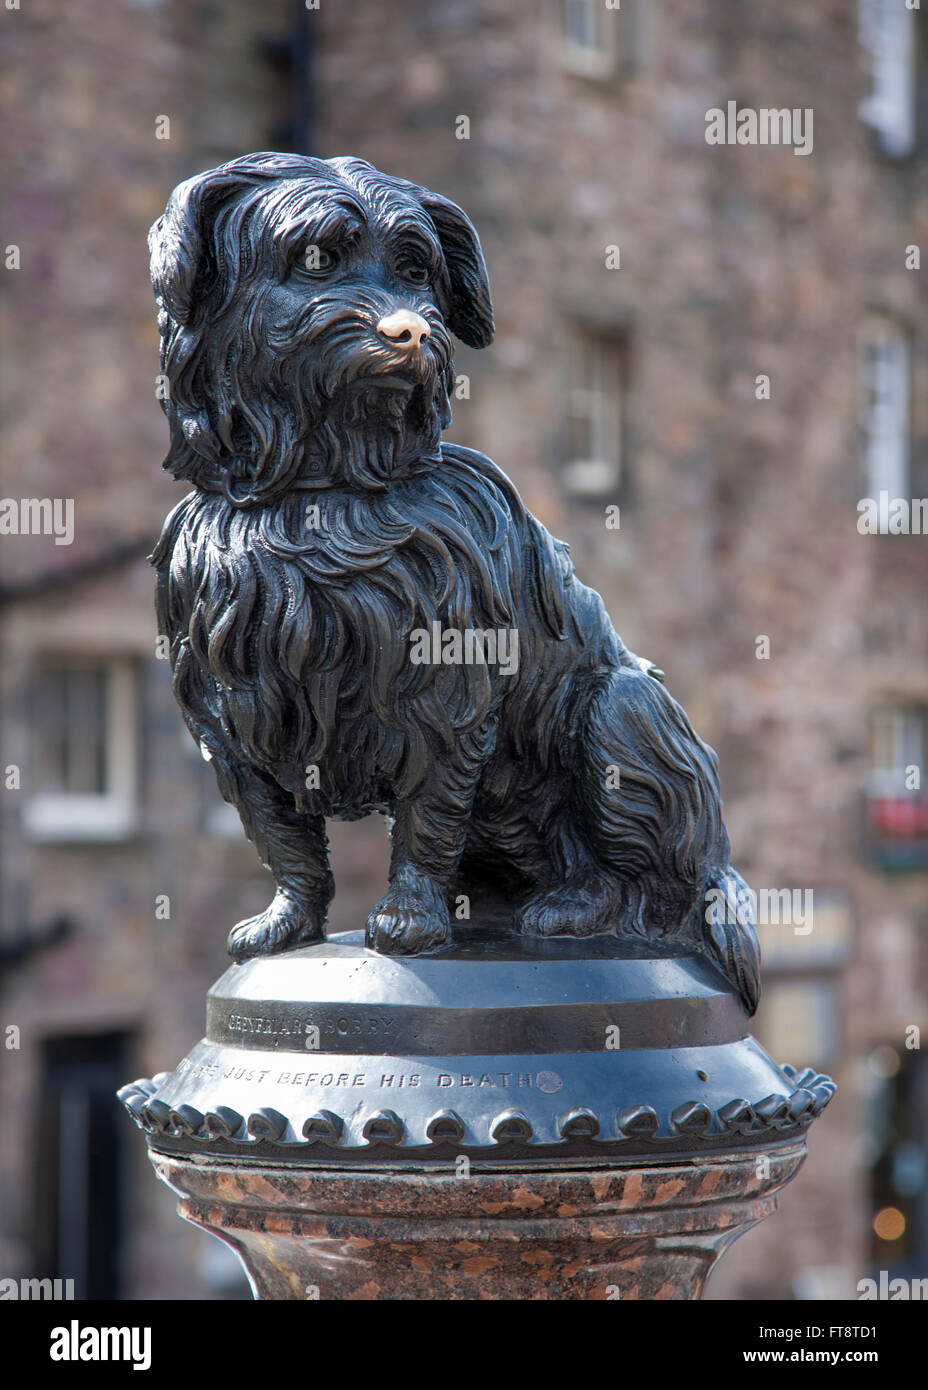 Edimburgo, ciudad de Edimburgo, Escocia. Estatua de Greyfriars Bobby en la intersección de Candlemaker Row y George IV Bridge. Foto de stock